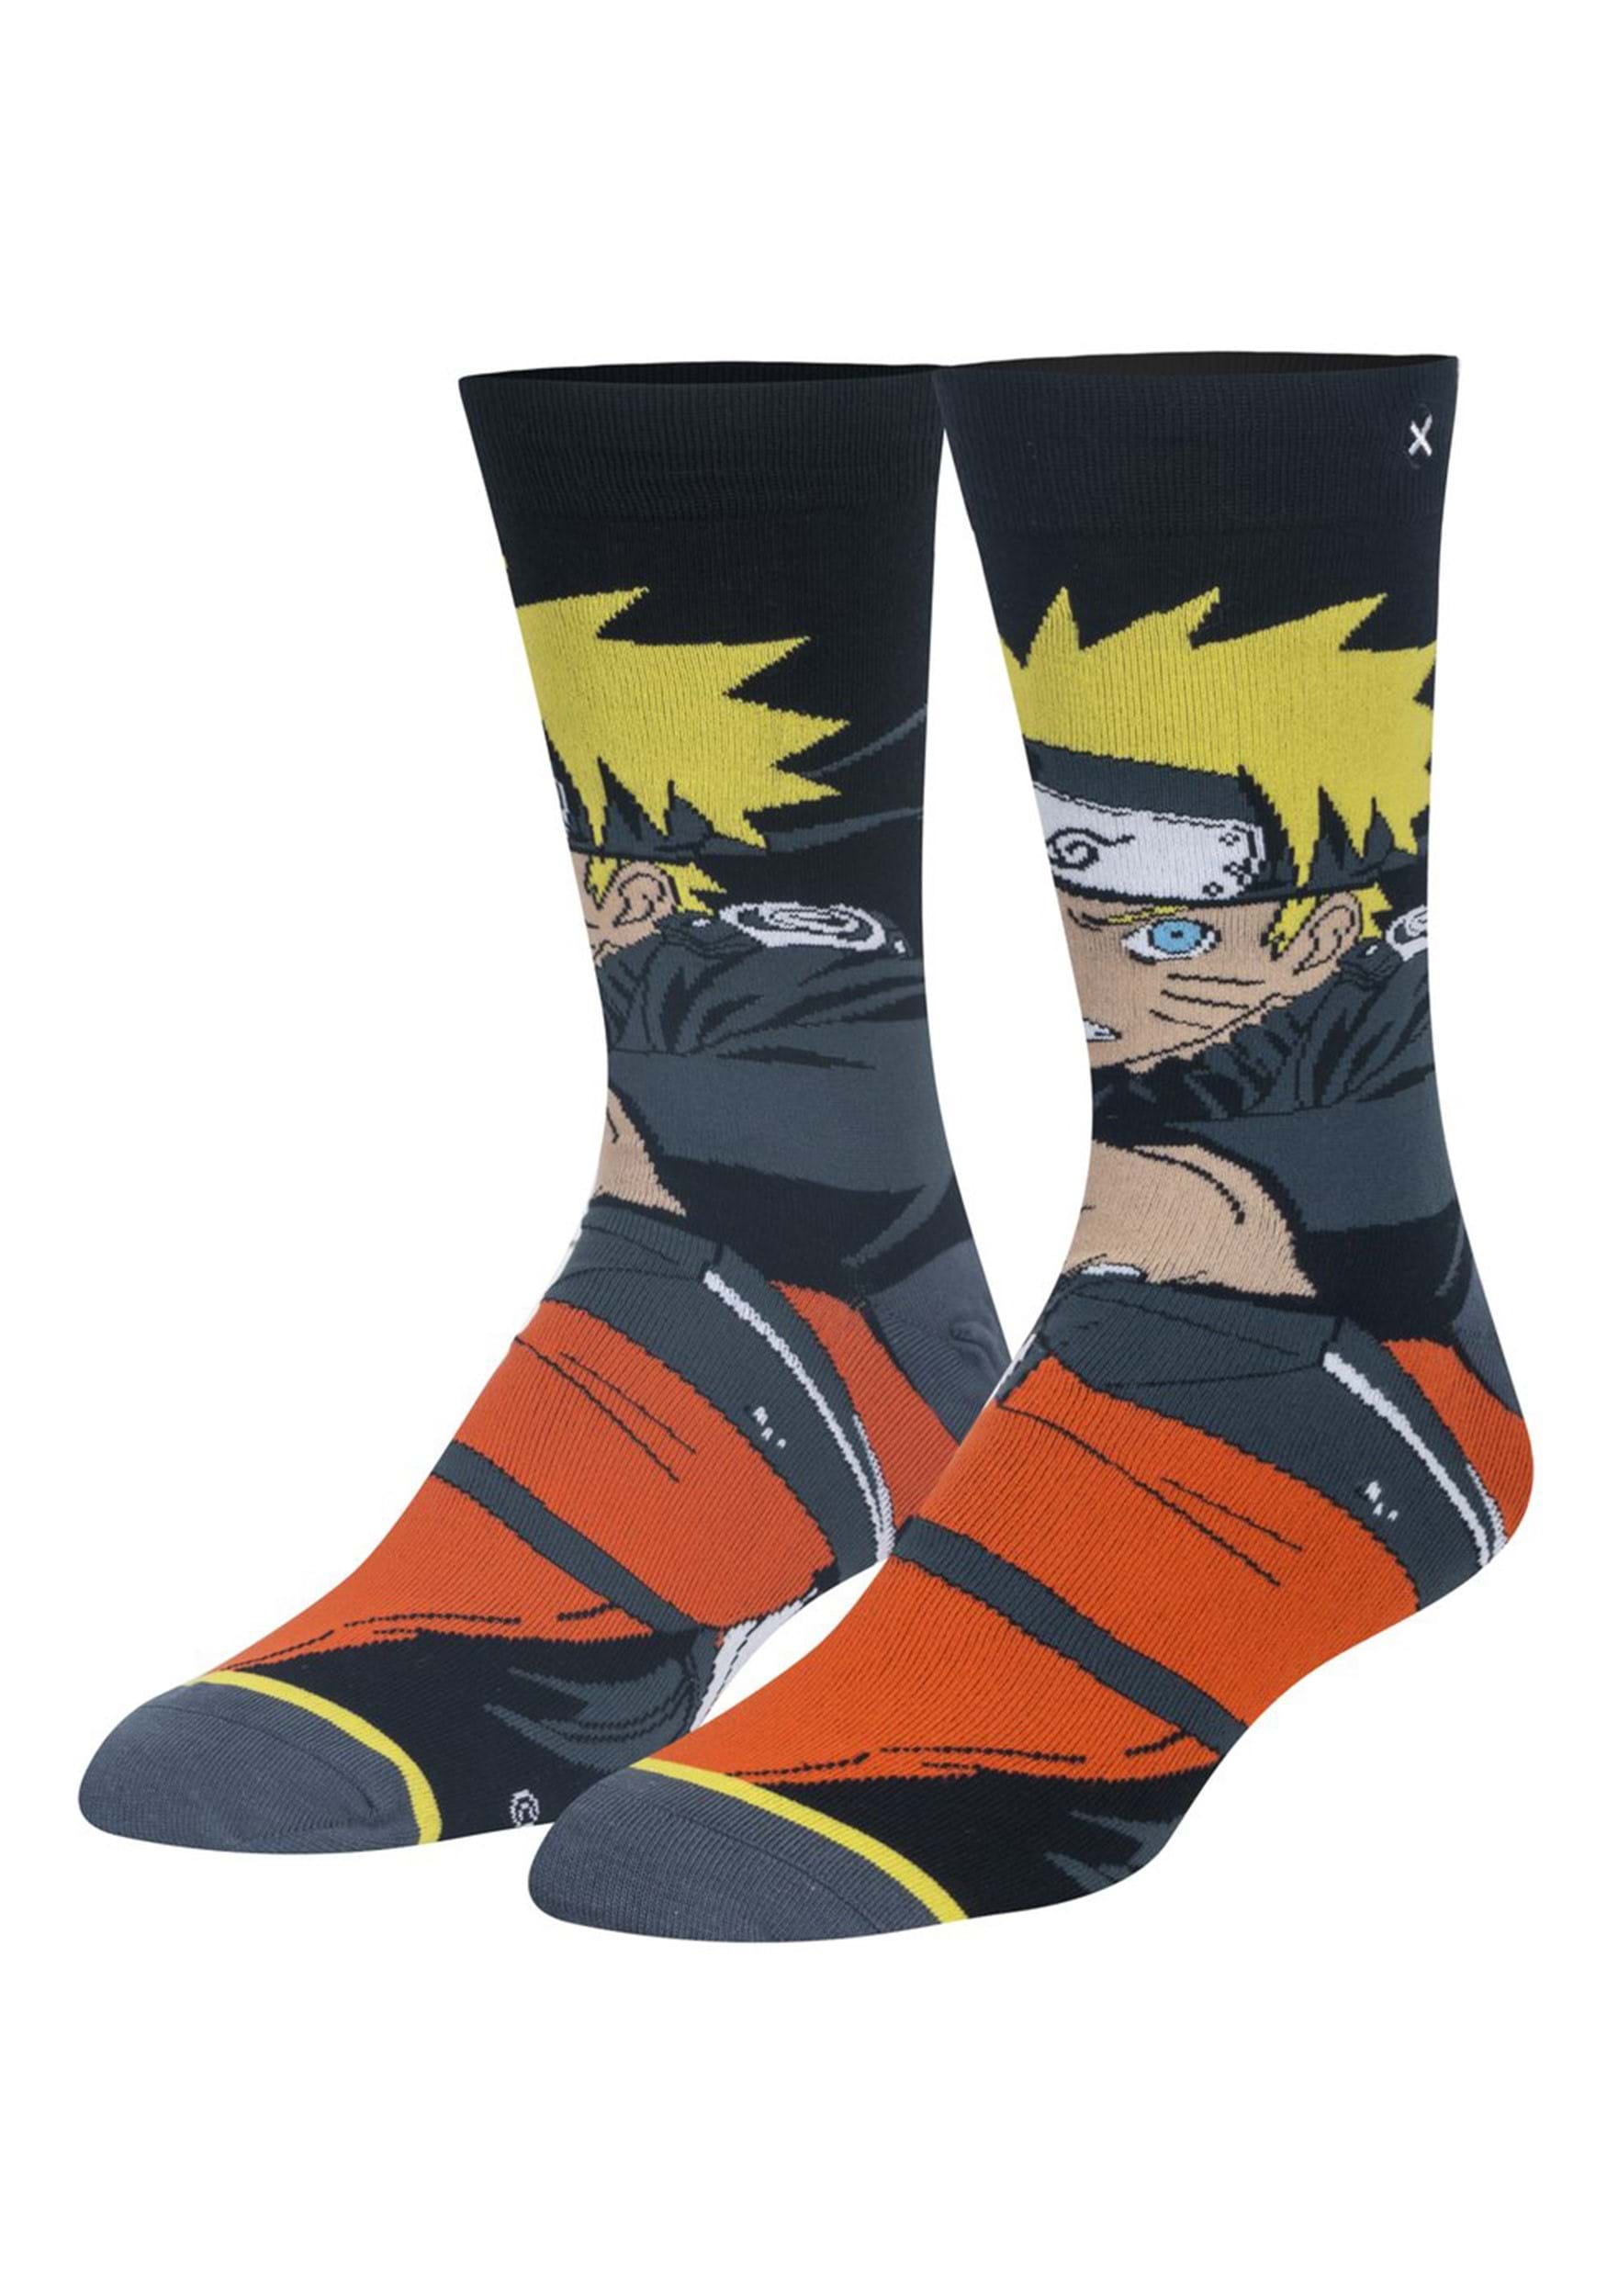 Naruto crew socks for men